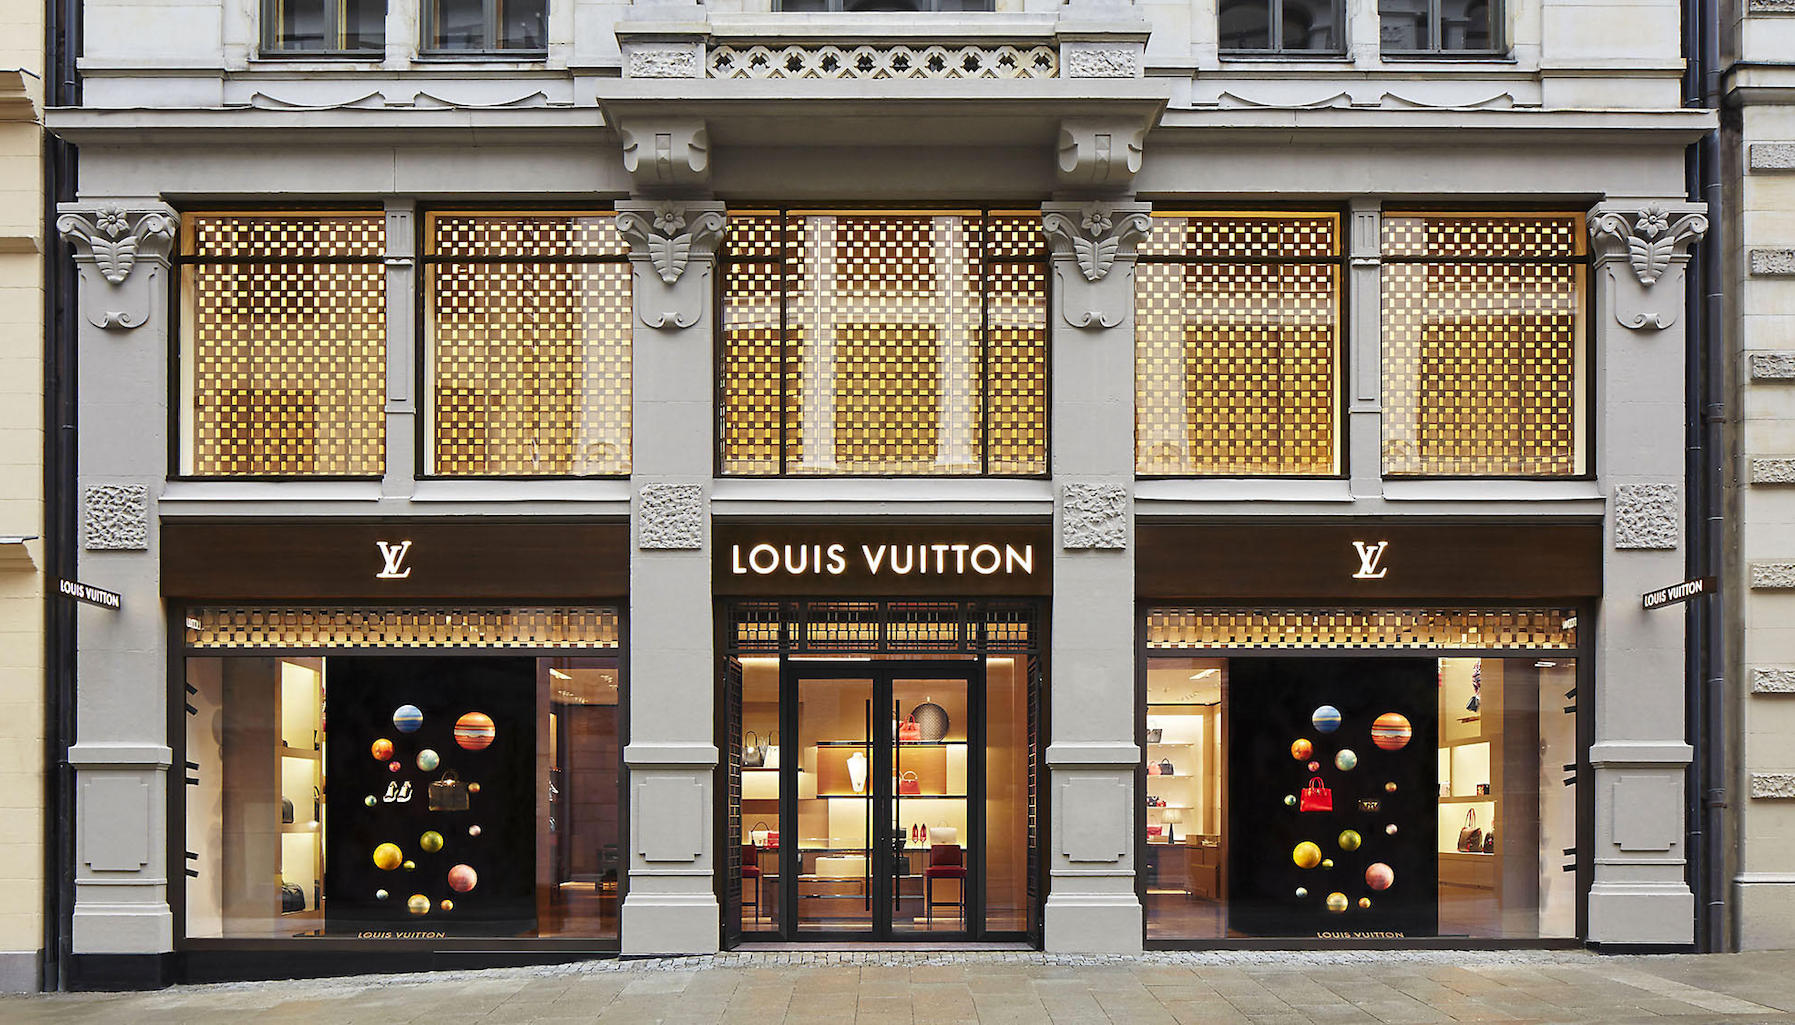 SỐC LVMH  tập đoàn sở hữu Louis Vuitton bị cáo buộc thuê gián điệp theo  dõi người khác